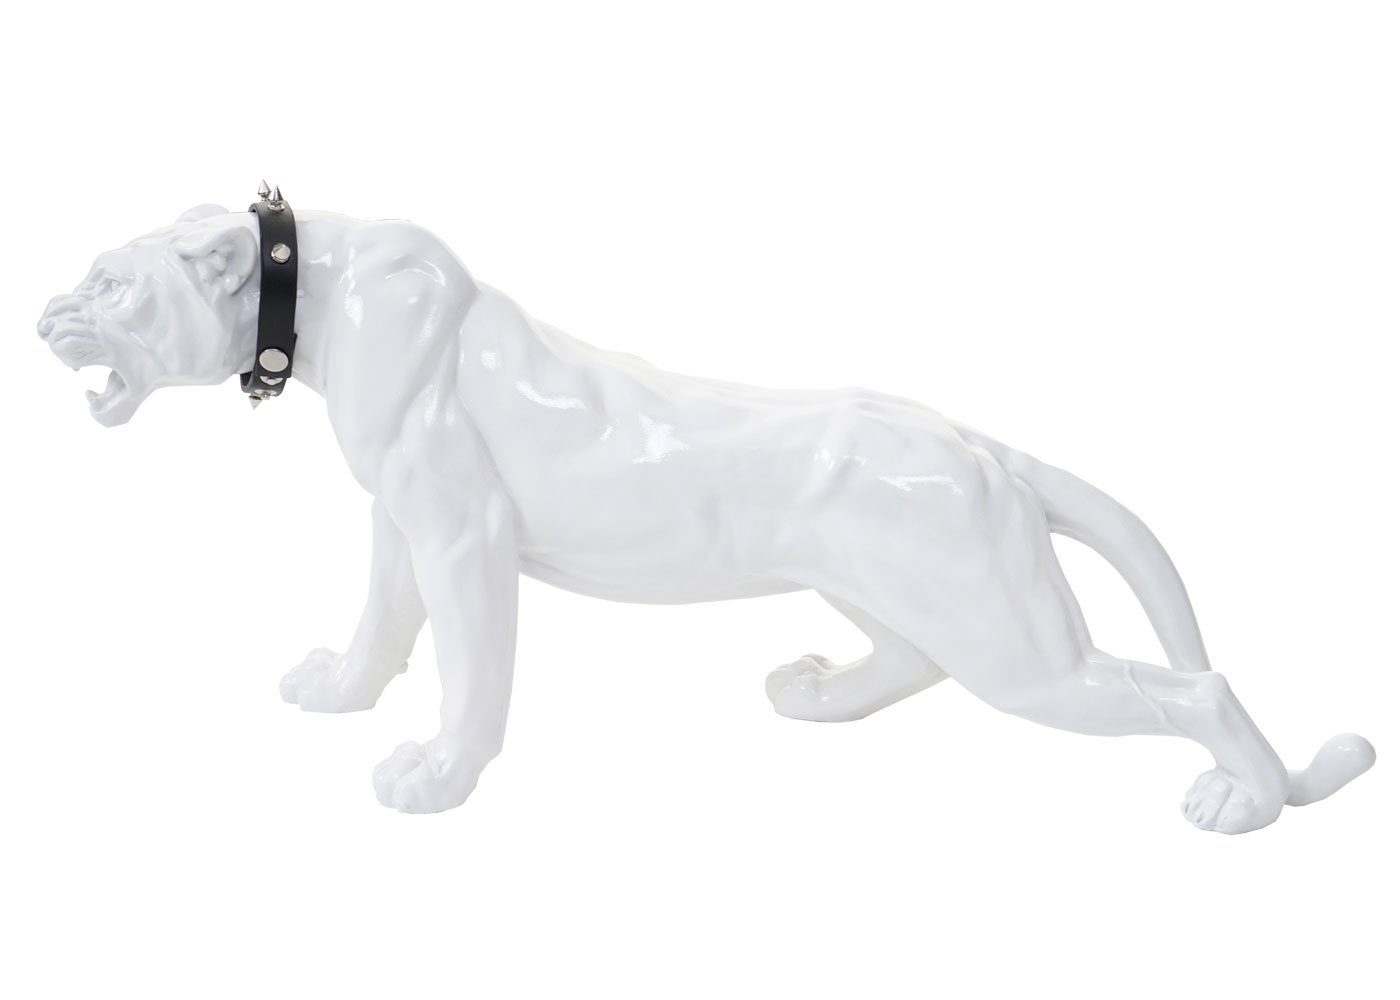 MCW Tierfigur Panther, Indoor/Outdoor-geeignet, Witterungsbeständig, Frostbeständig bis -10° C, Inkl. Halsband weiß